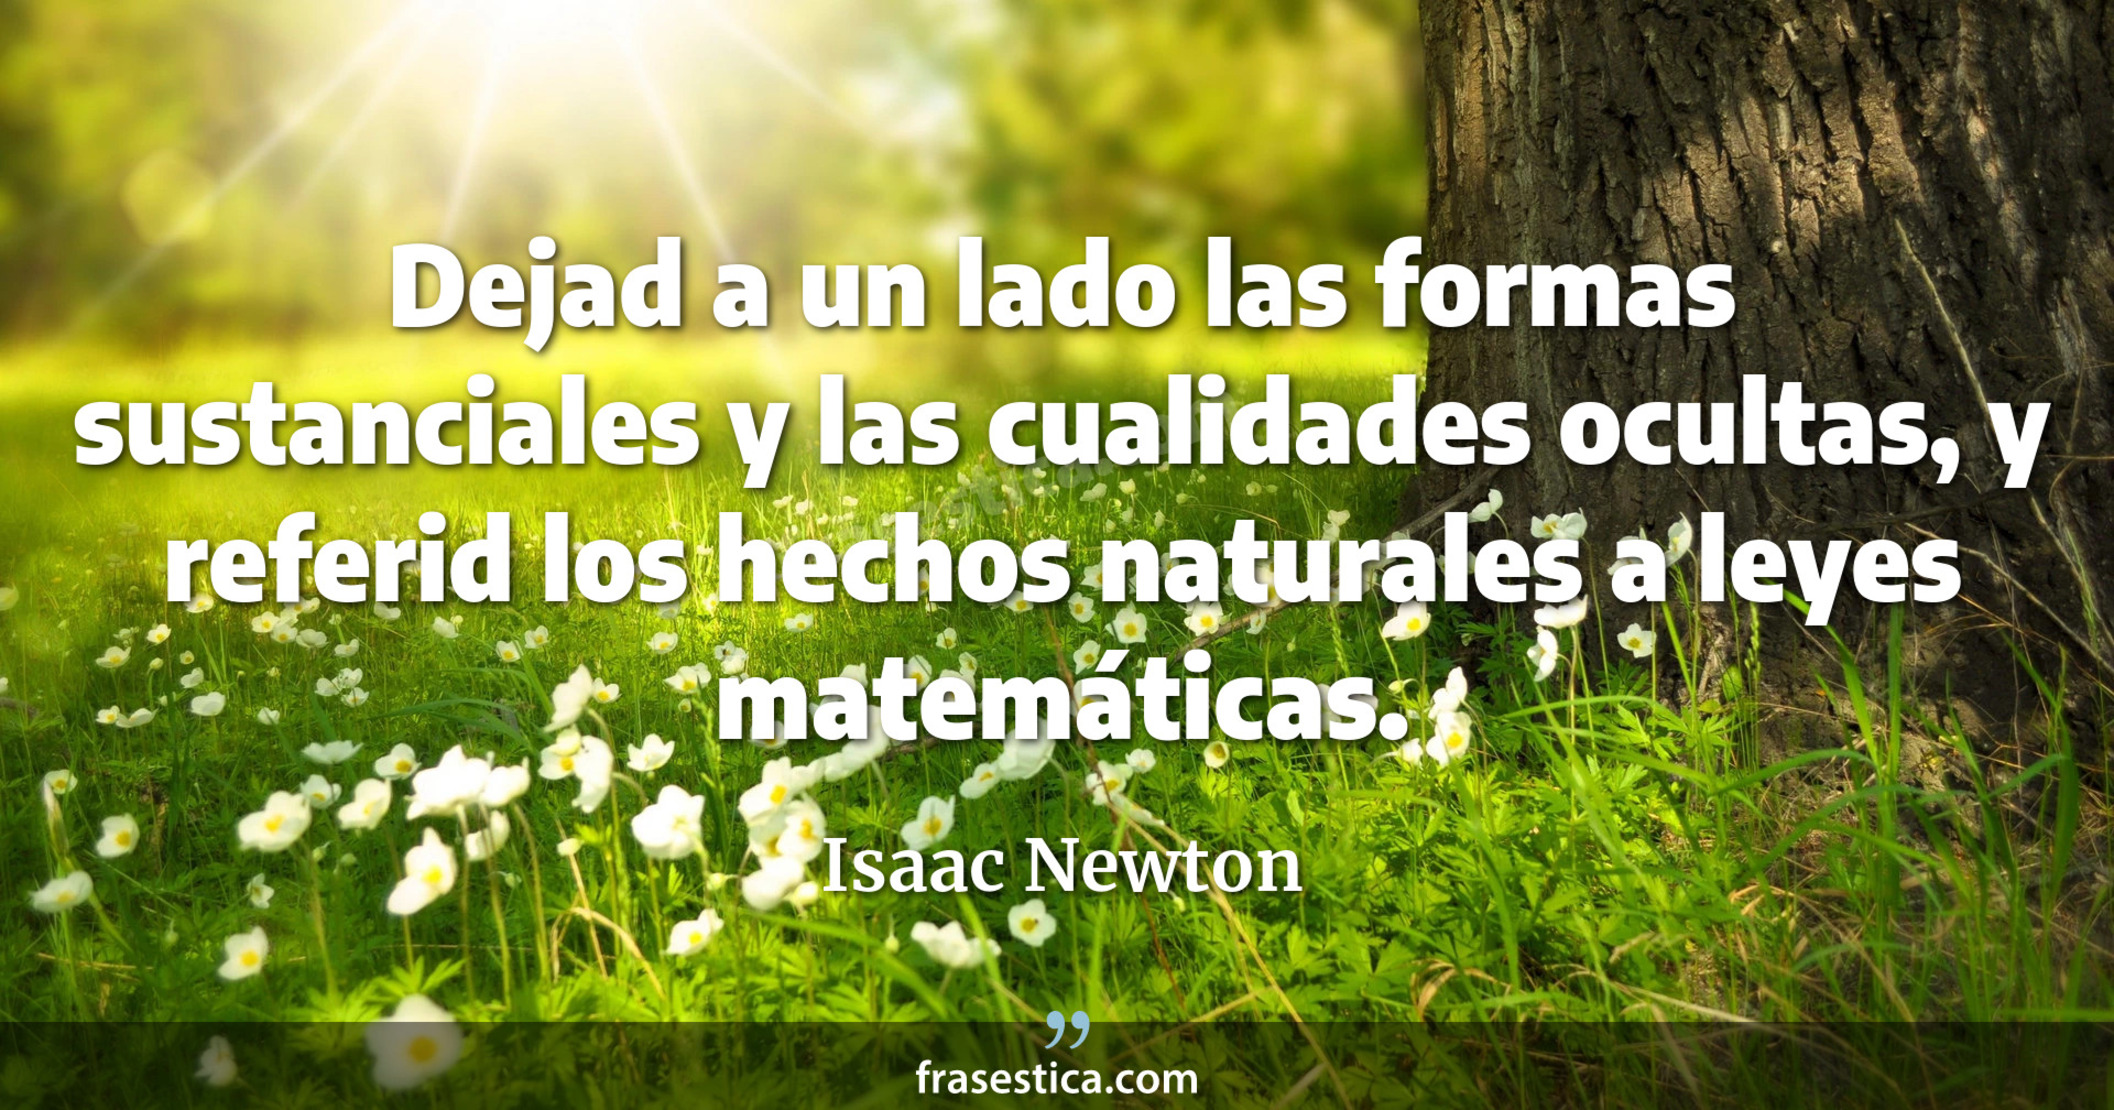 Dejad a un lado las formas sustanciales y las cualidades ocultas, y referid los hechos naturales a leyes matemáticas. - Isaac Newton